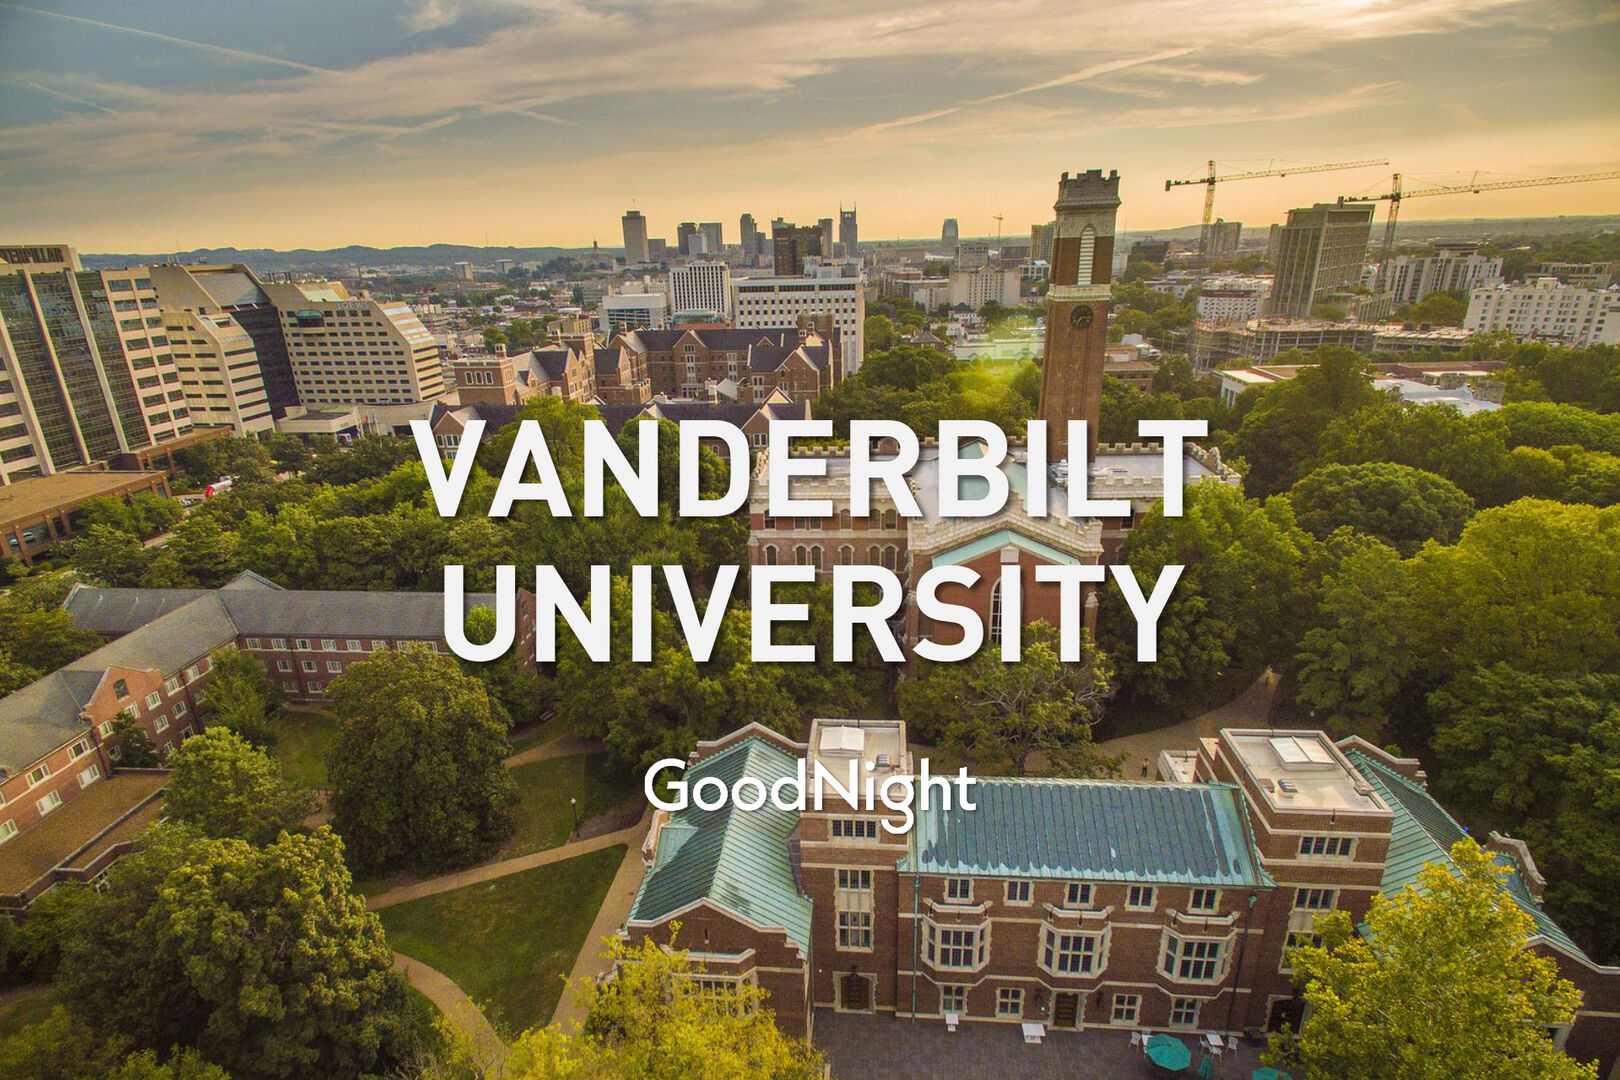 30 mins: Vanderbilt University